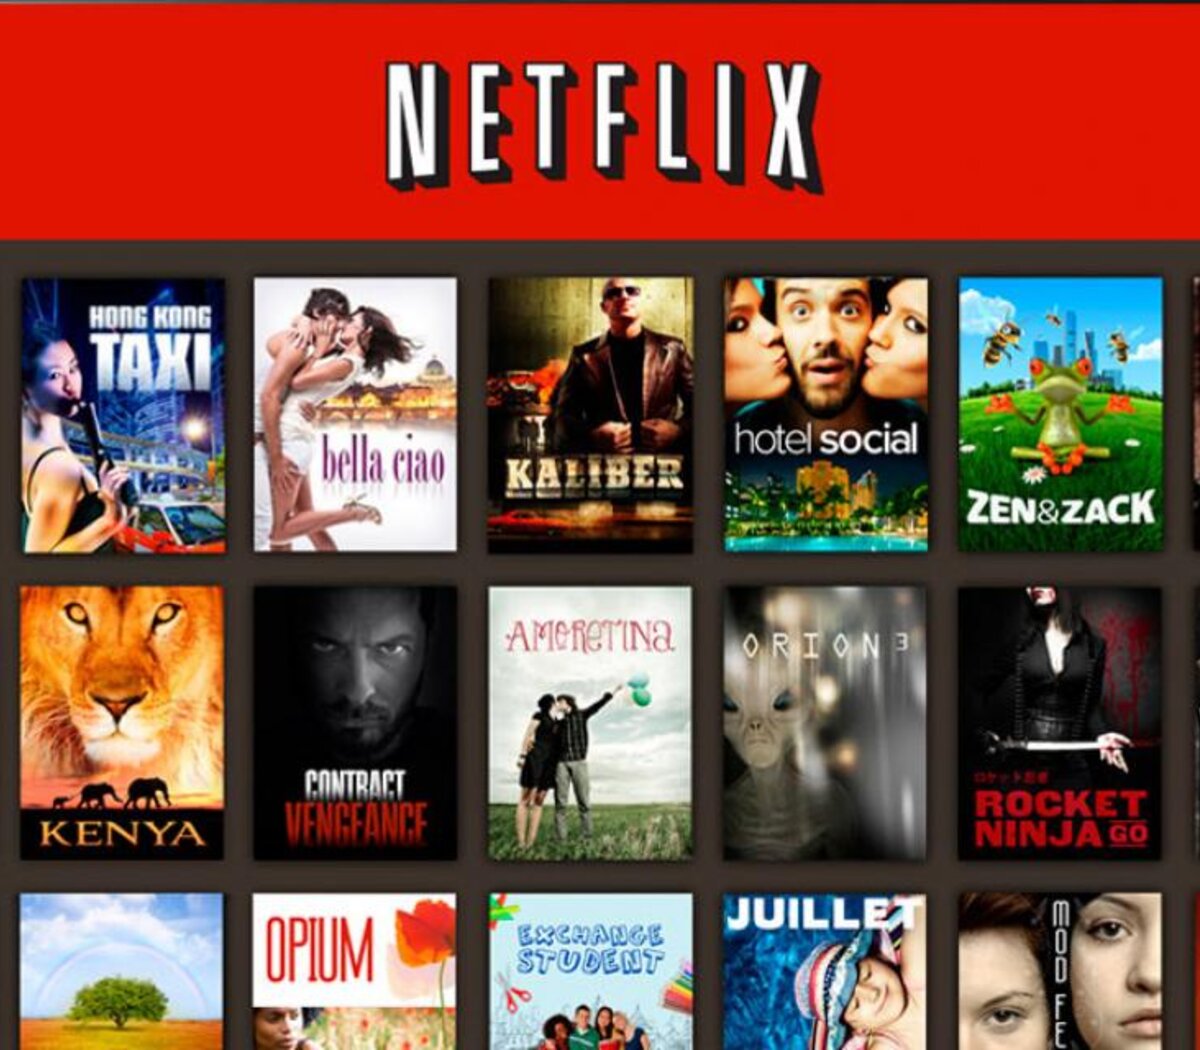 Netflix: Lista de códigos secretos para ver series y películas ocultas del  catálogo (ACTUALIZADO), Netflix trucos 2020